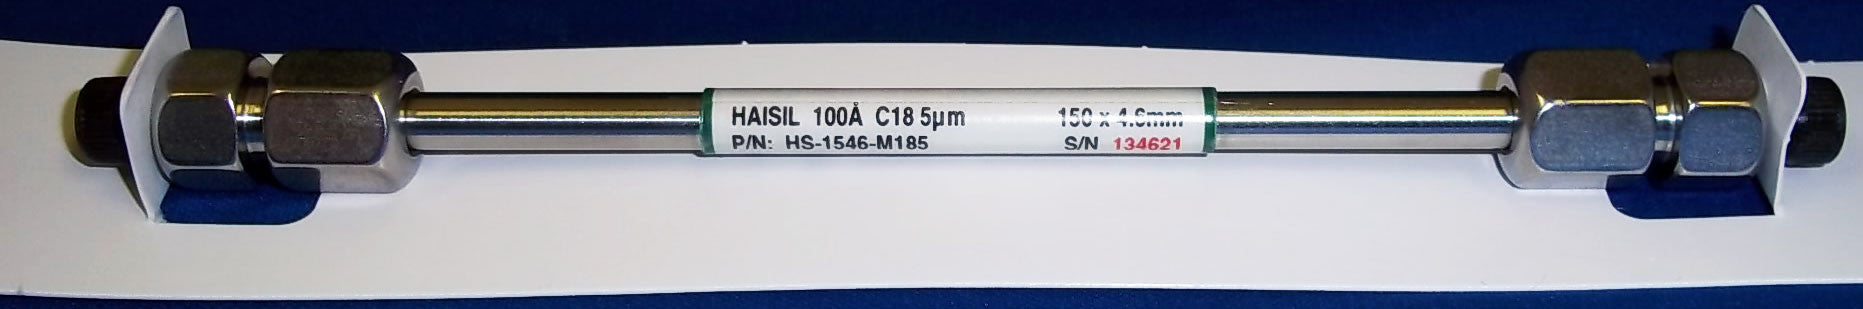 150 x 4.6mm Silica SS Column